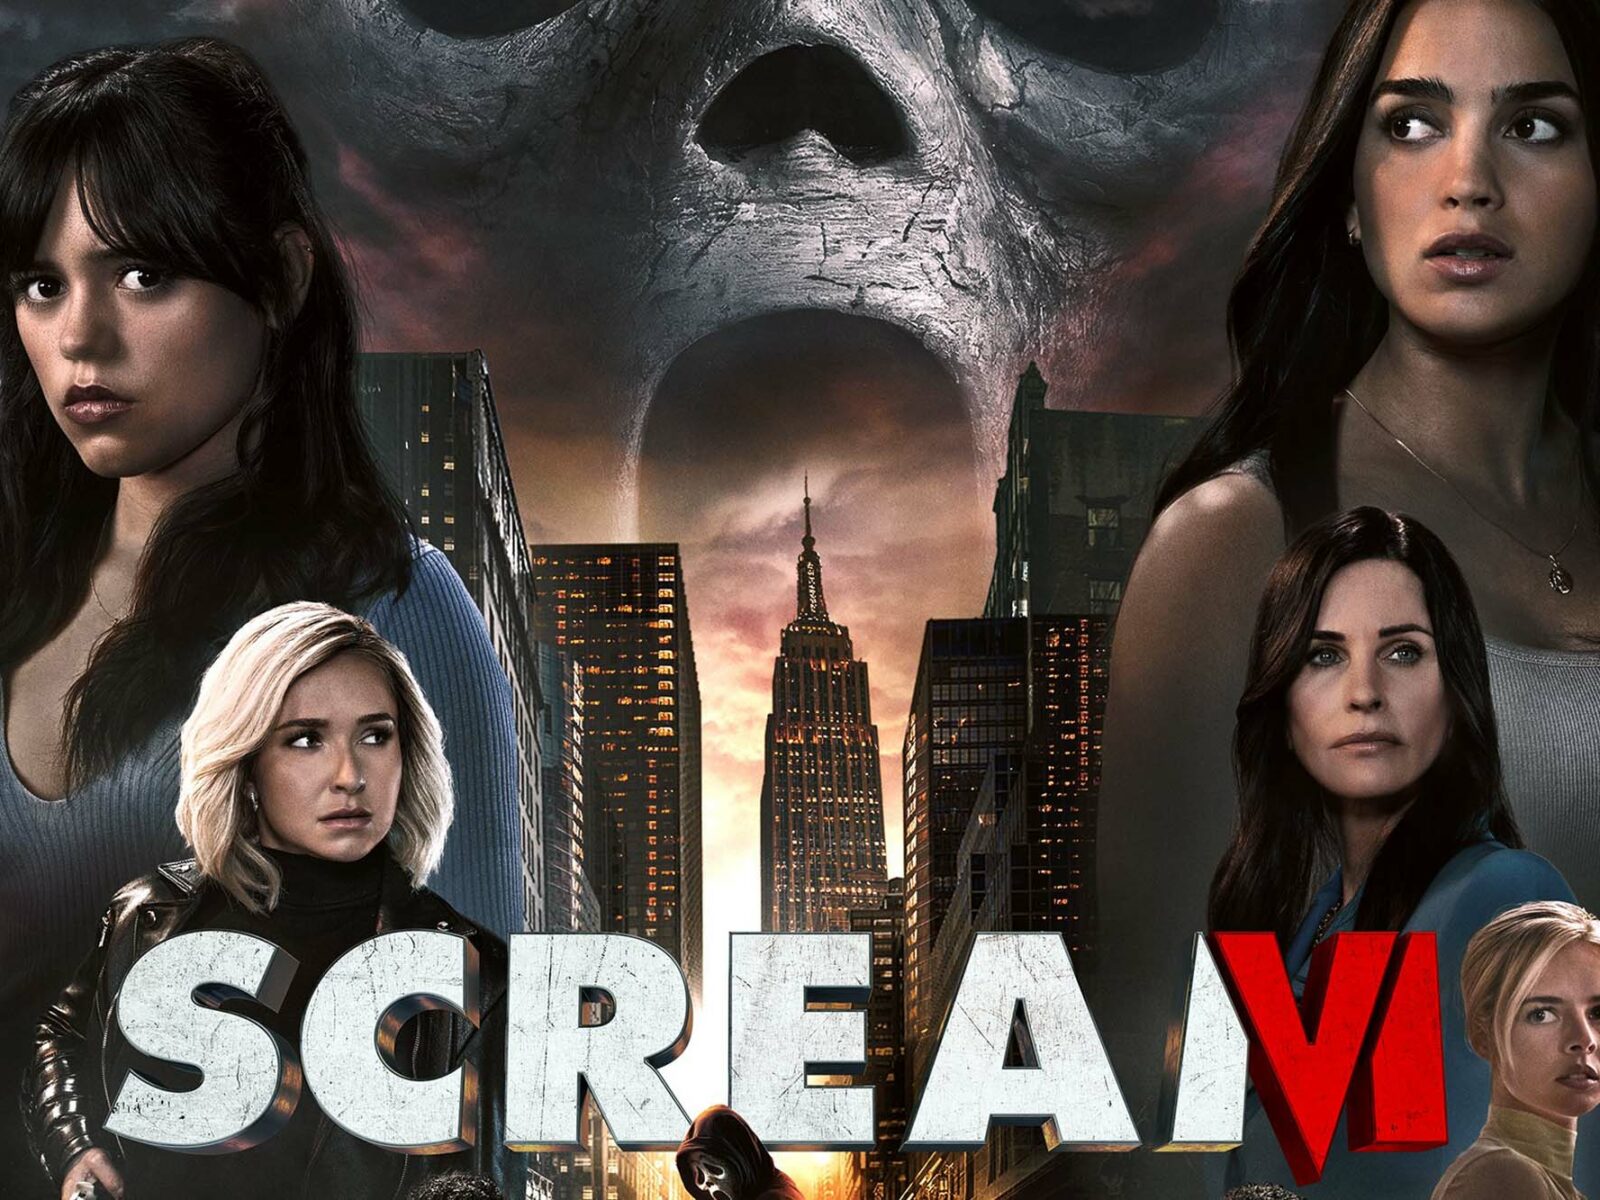 Scream 6 Movie Poster 1 